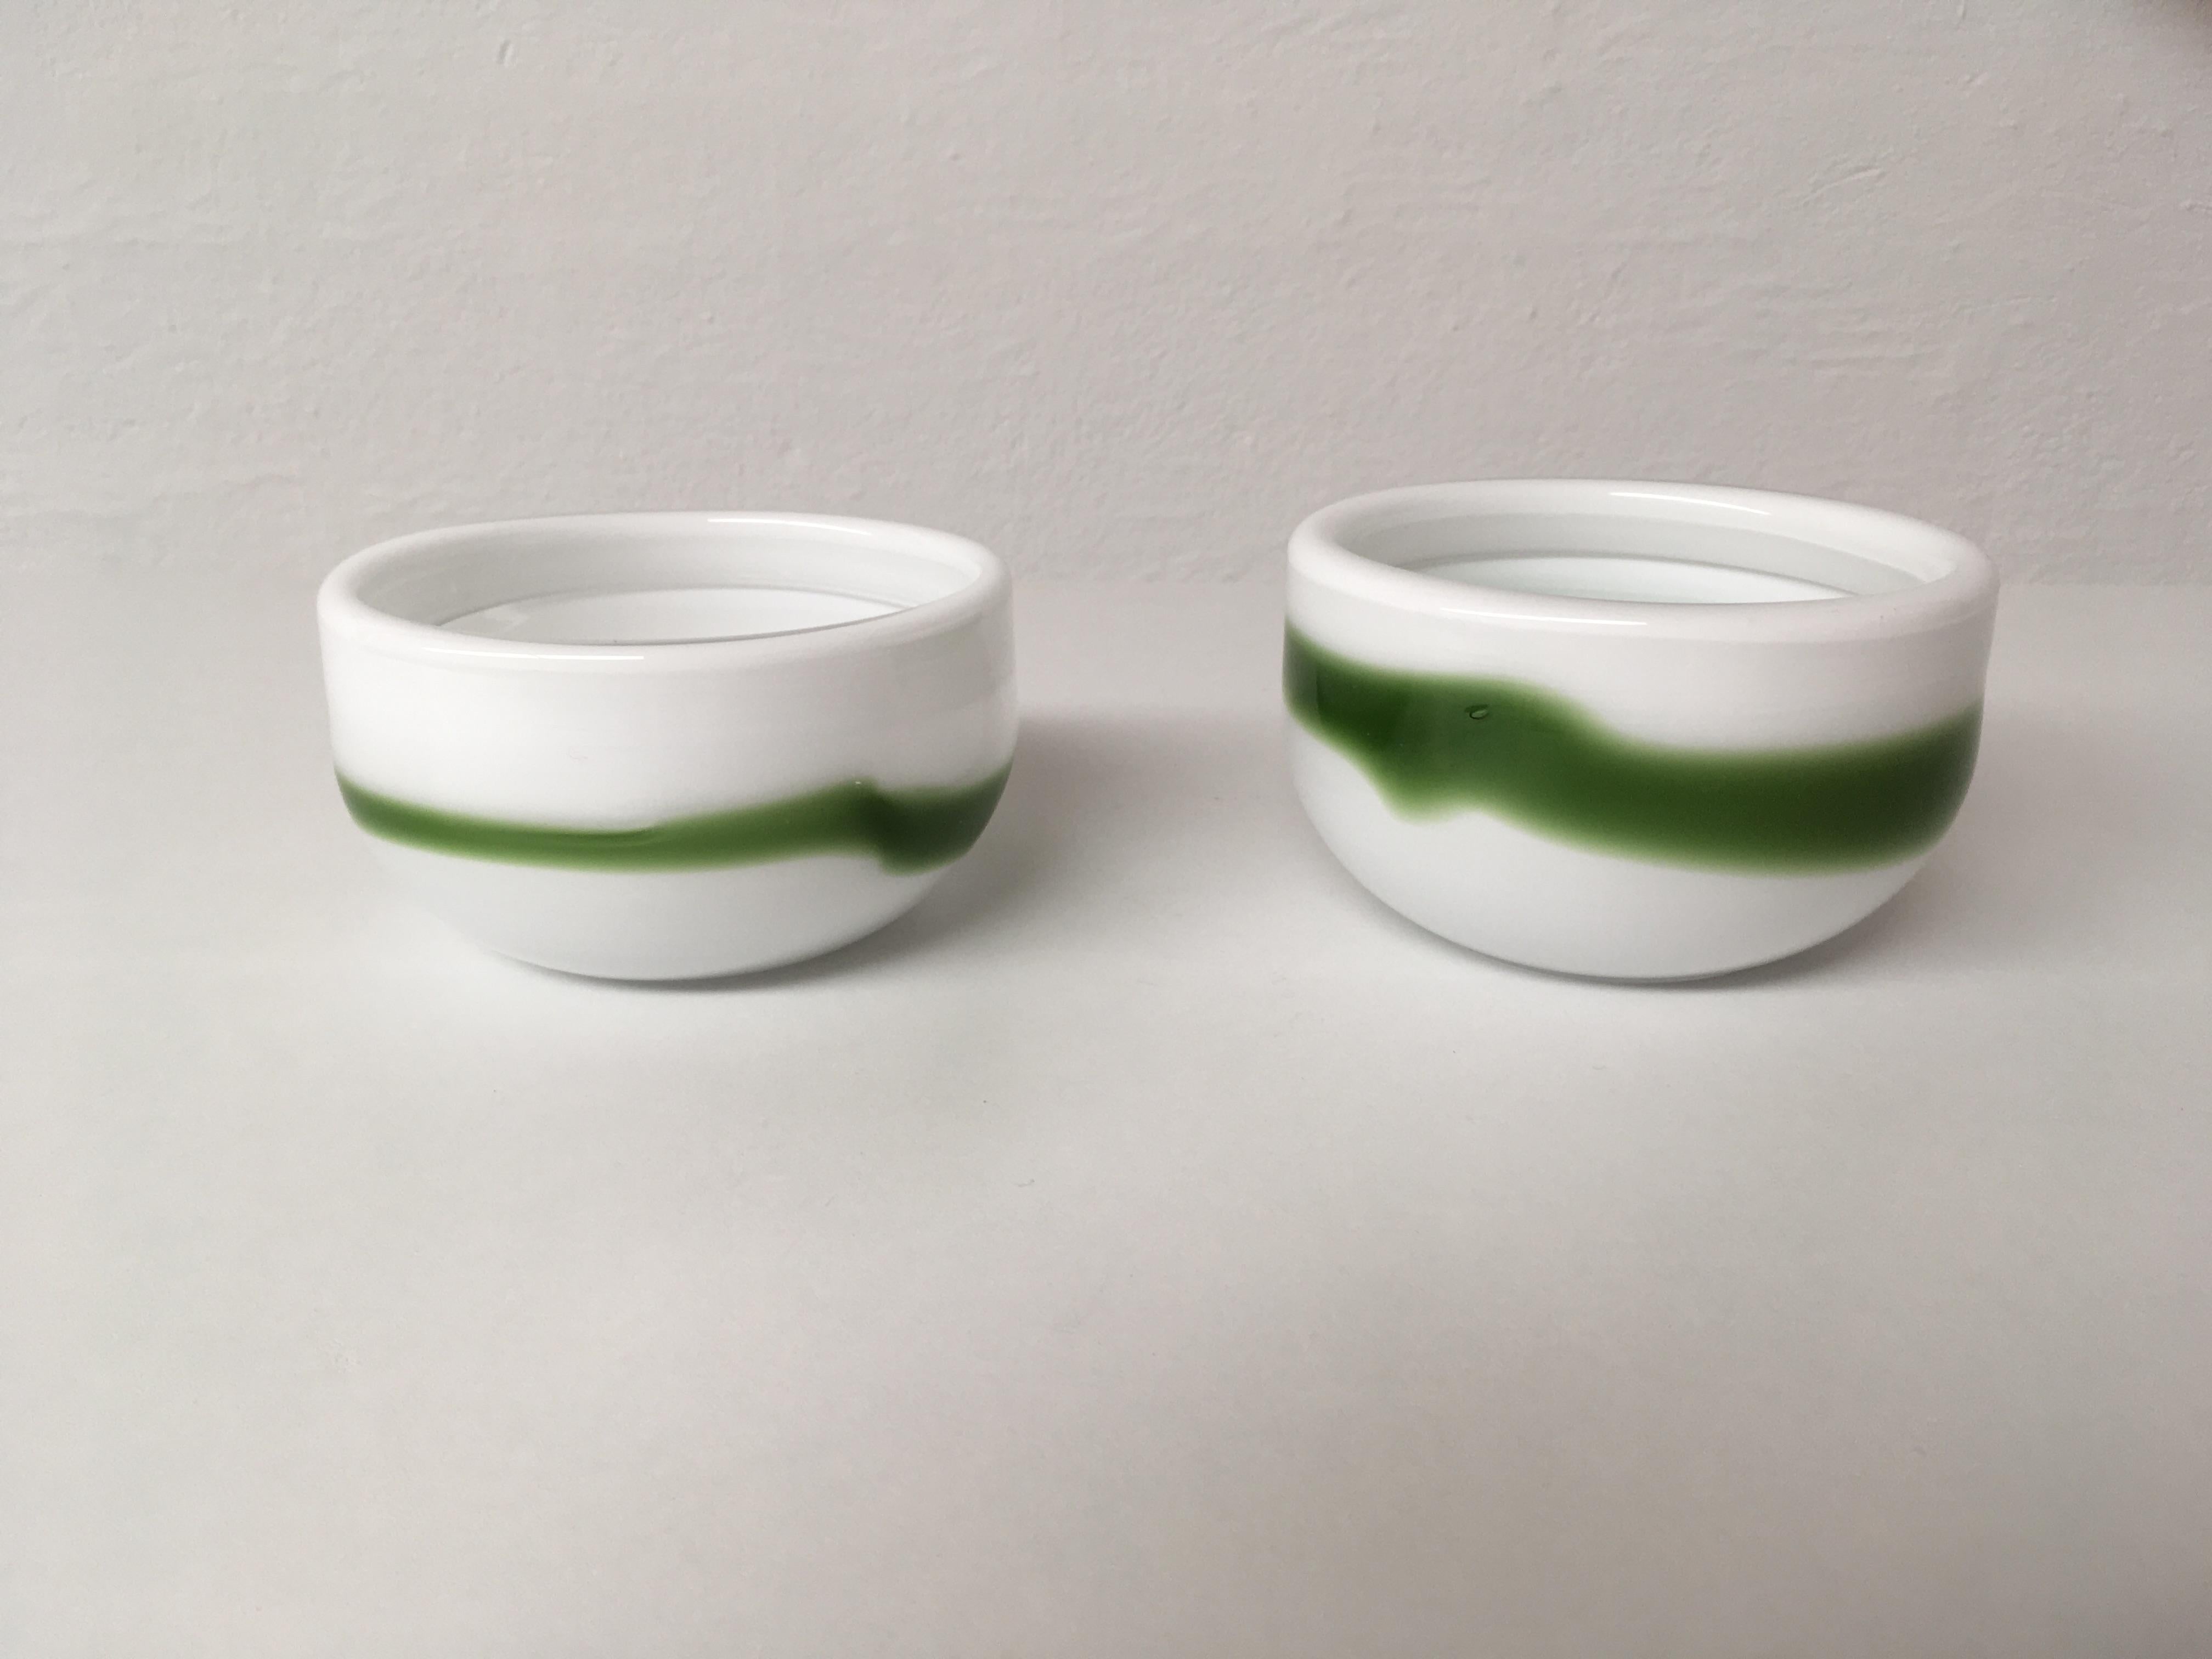 Ensemble de deux bols danois blancs et verts en verre opalin soufflé à la main, conçus par Michael Bang et produits par Holmegaard dans les années 1970.

L'ensemble bien conçu avec ses couleurs des années 1970 en verre opalin à trois couches est